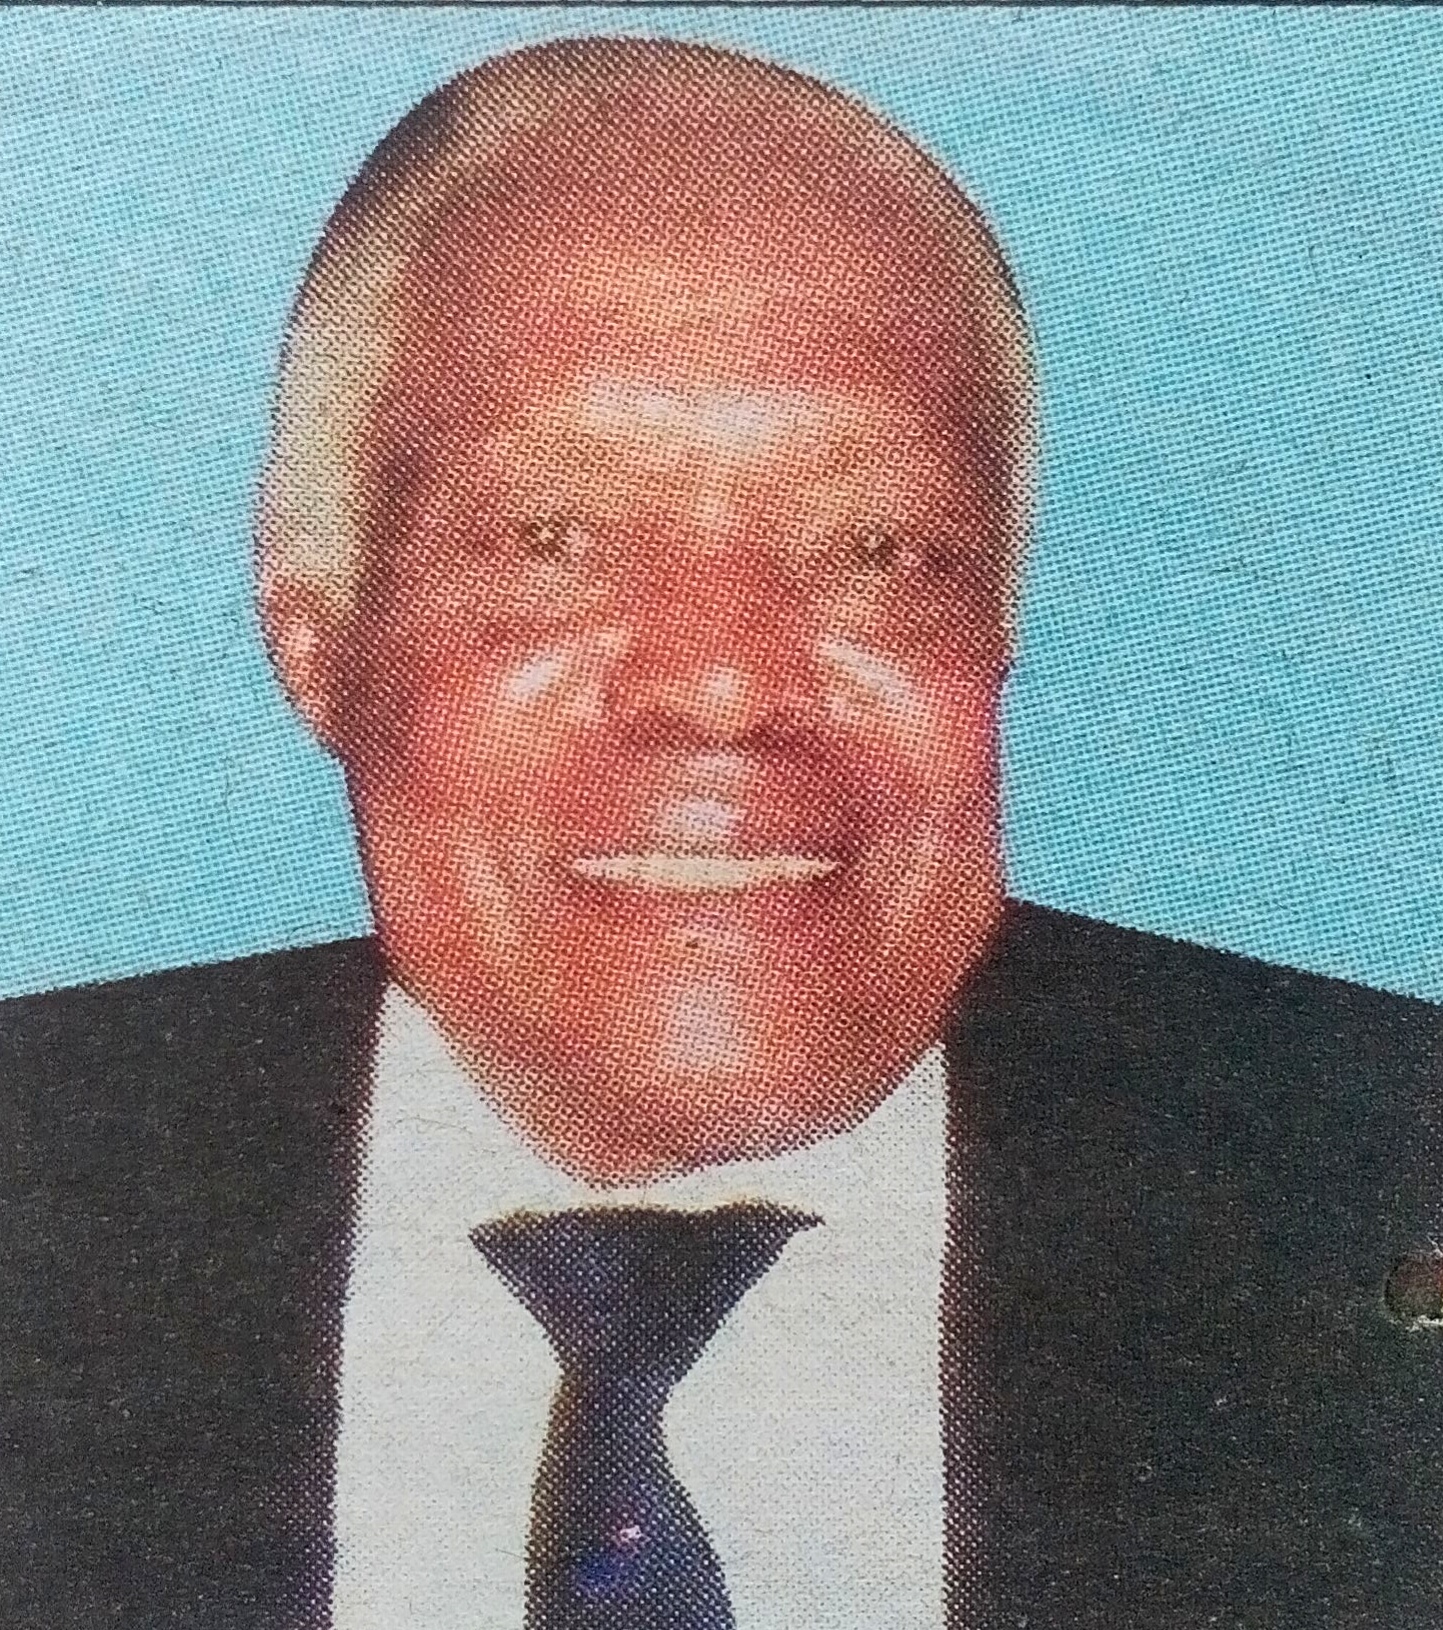 Obituary Image of Eliud Ndung'u Wainaina